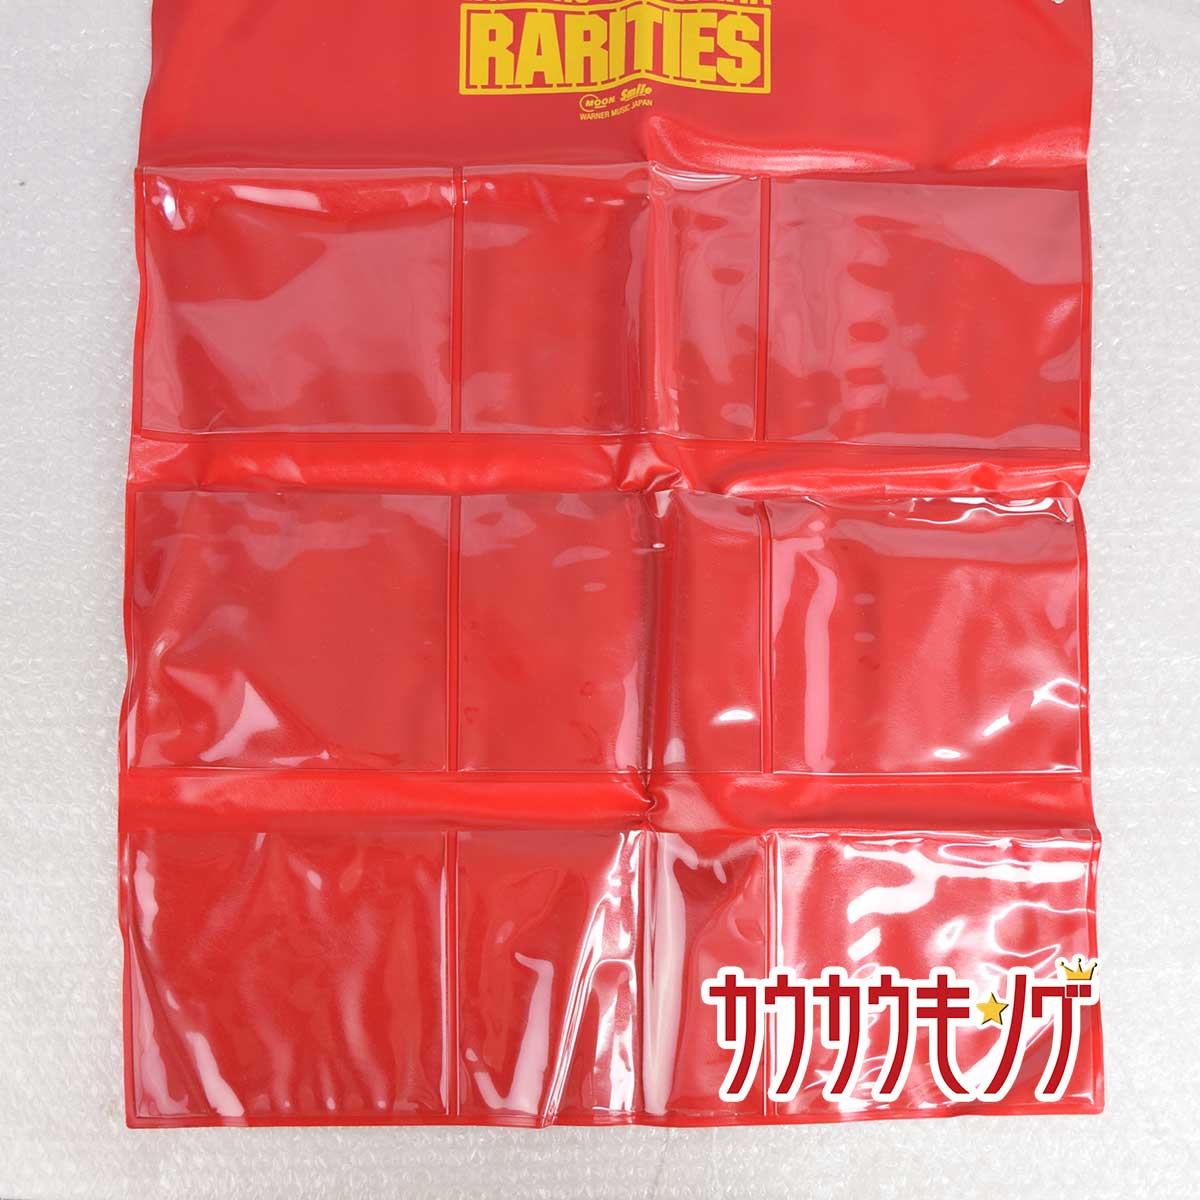 【中古】山下達郎 RARITIES CDサイズ ウォールポケット /スマイルカンパニー Warner Music Japan